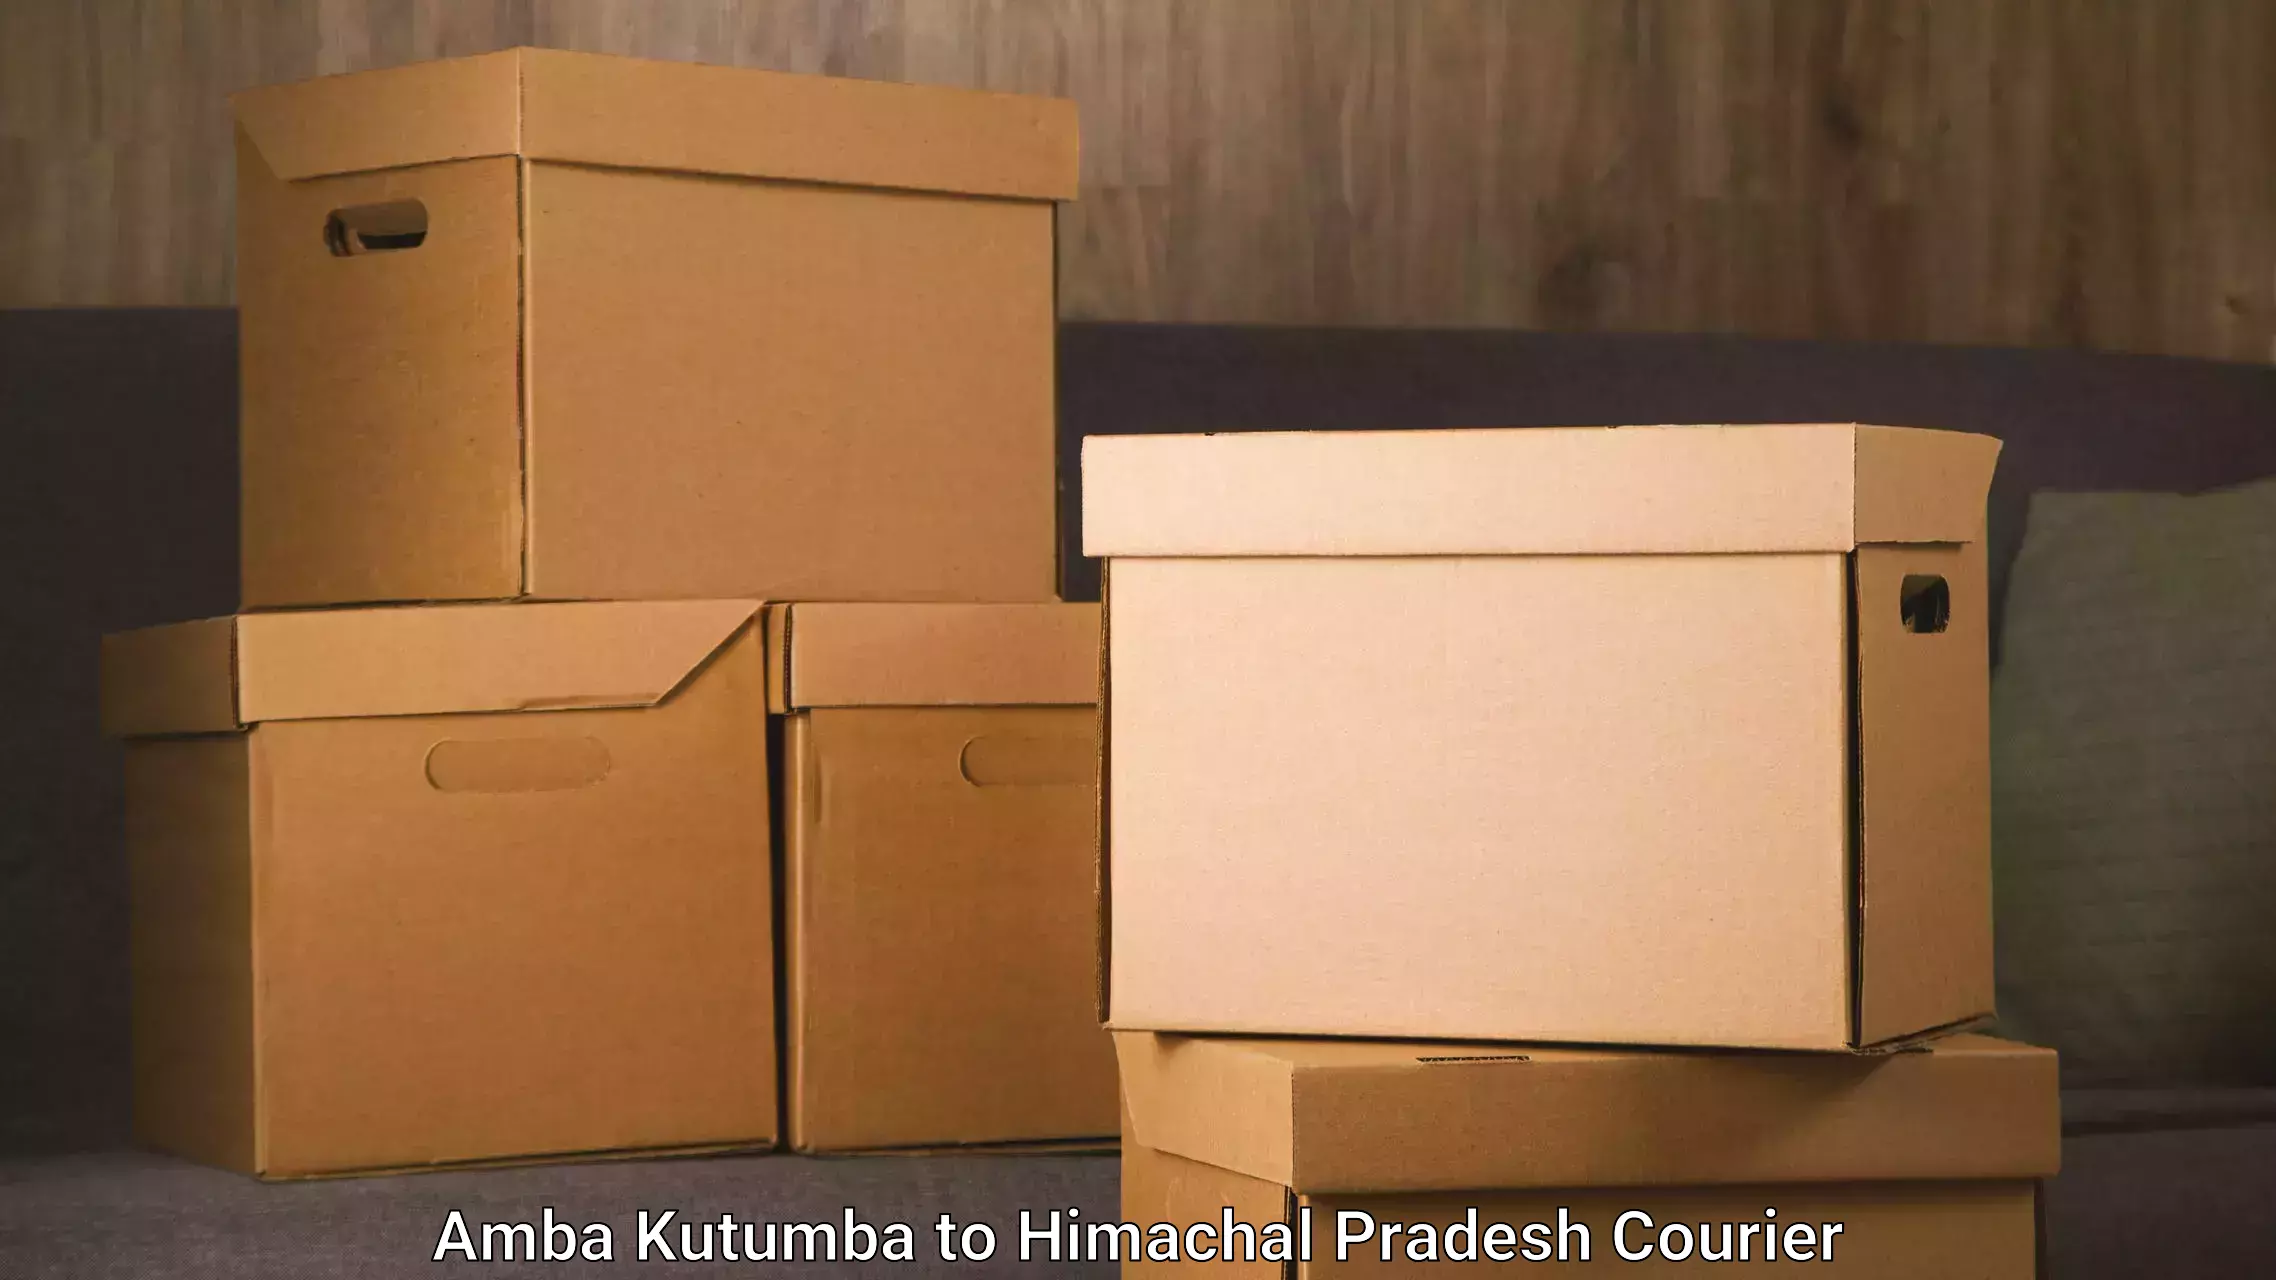 Trusted relocation experts Amba Kutumba to Himachal Pradesh